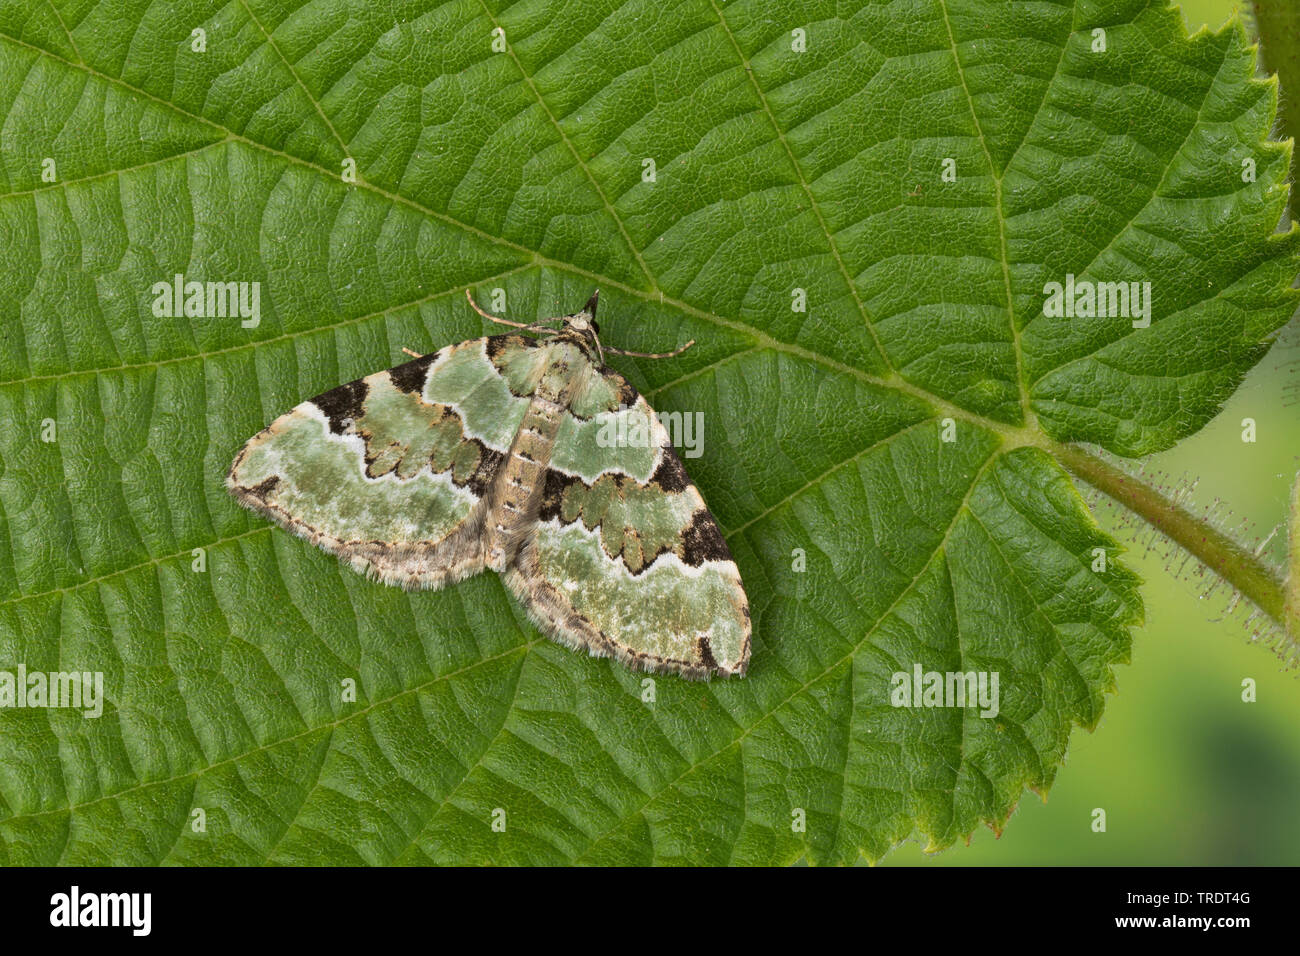 Green carpet (Colostygia pectinataria, Larentia viridaria), sitting on a leaf, Germany Stock Photo